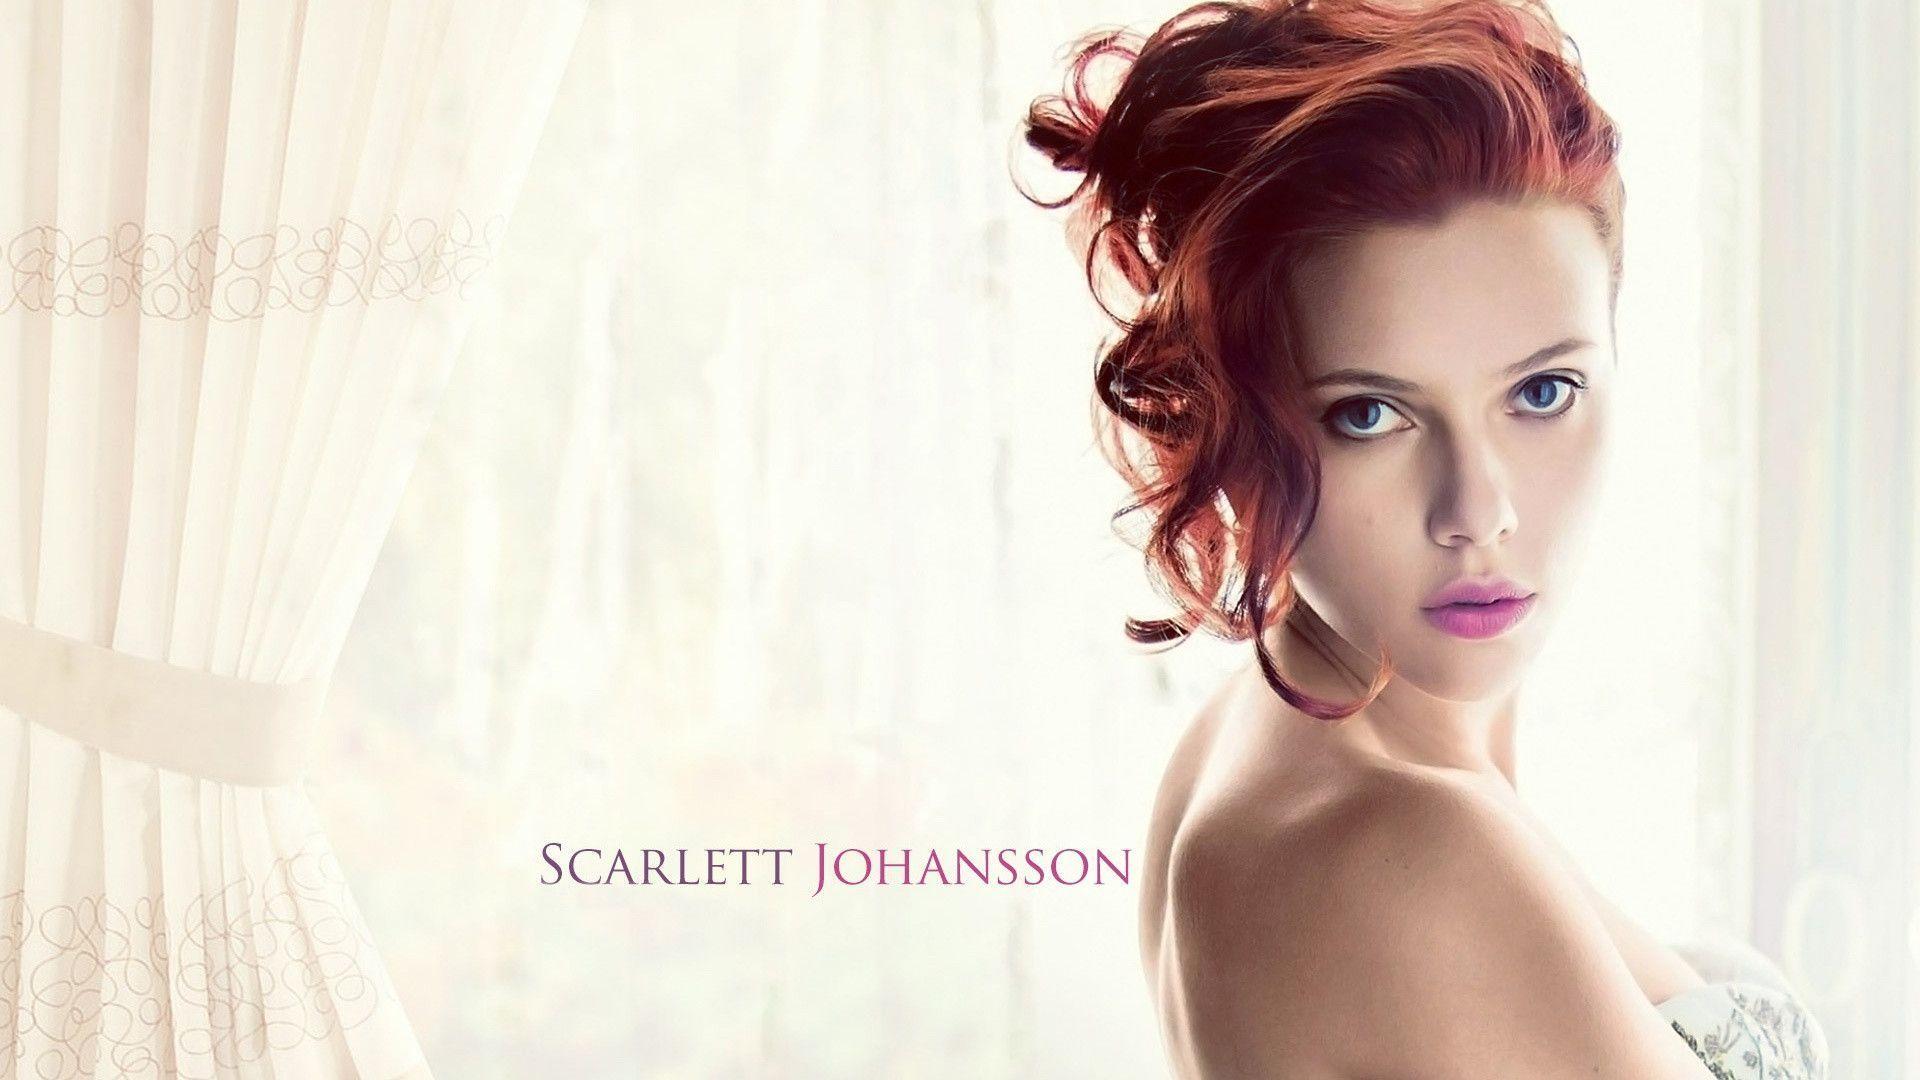 Scarlett Johansson 2014 Wallpaper